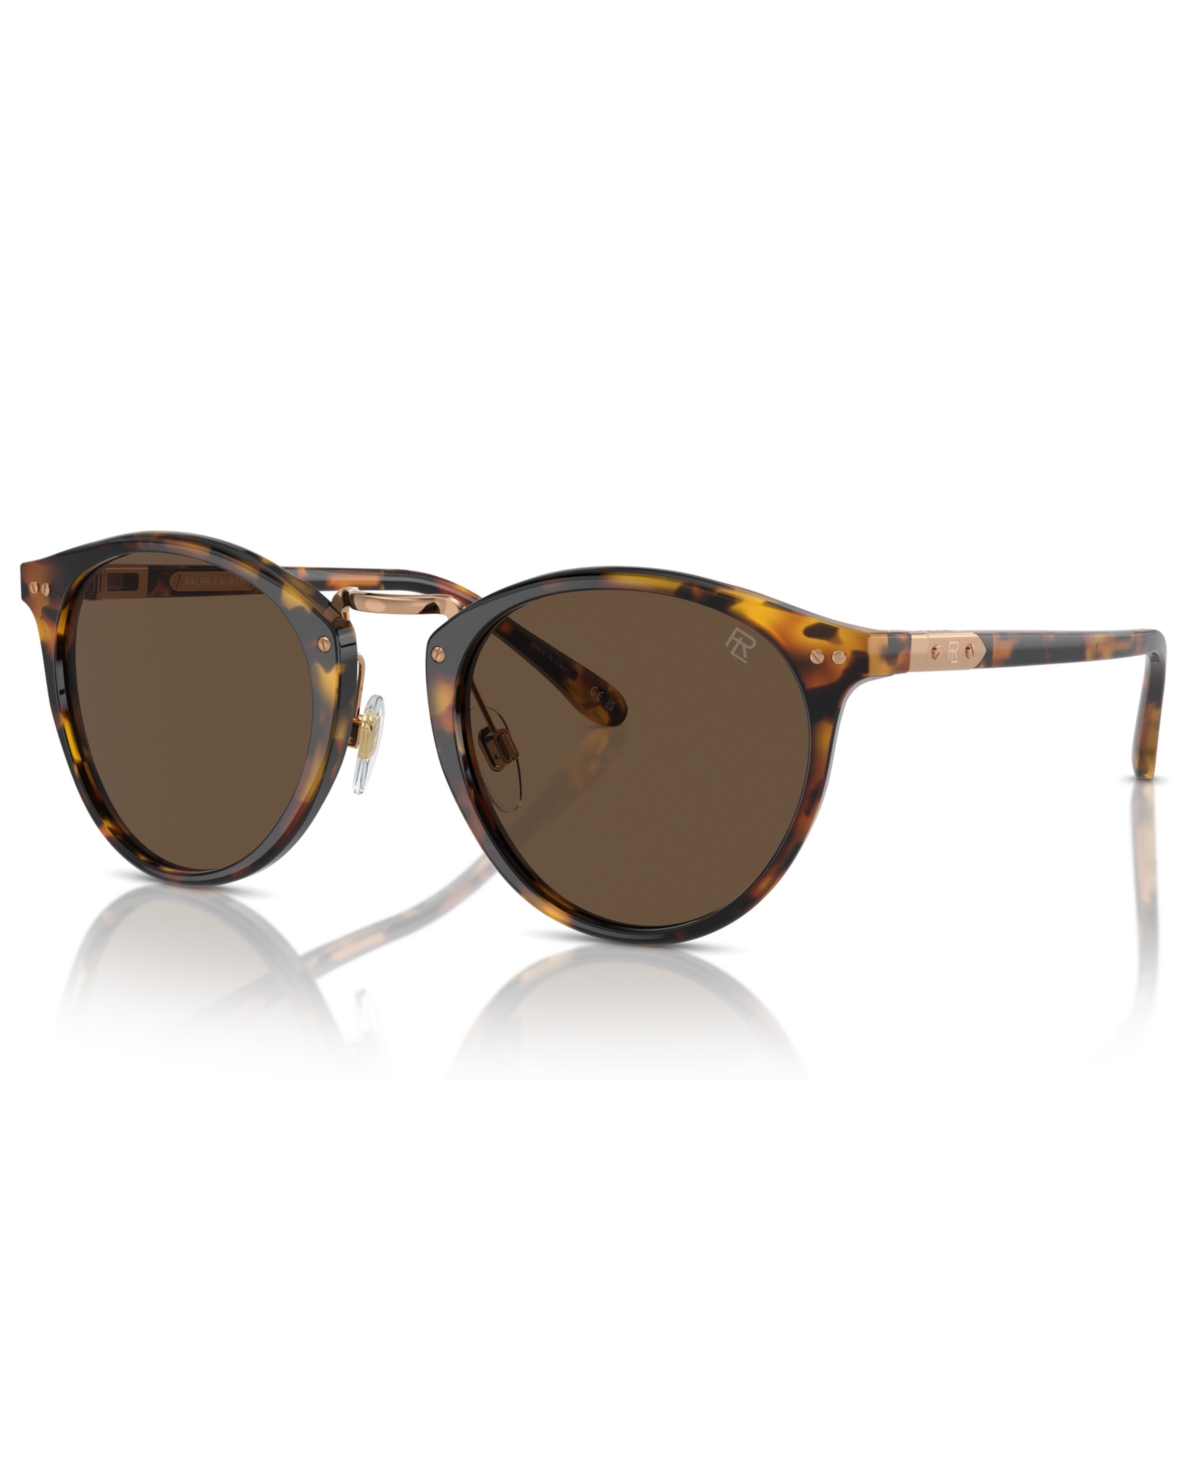 Ralph Lauren Men's Sunglasses, The Quincy Rl8223 In Brown